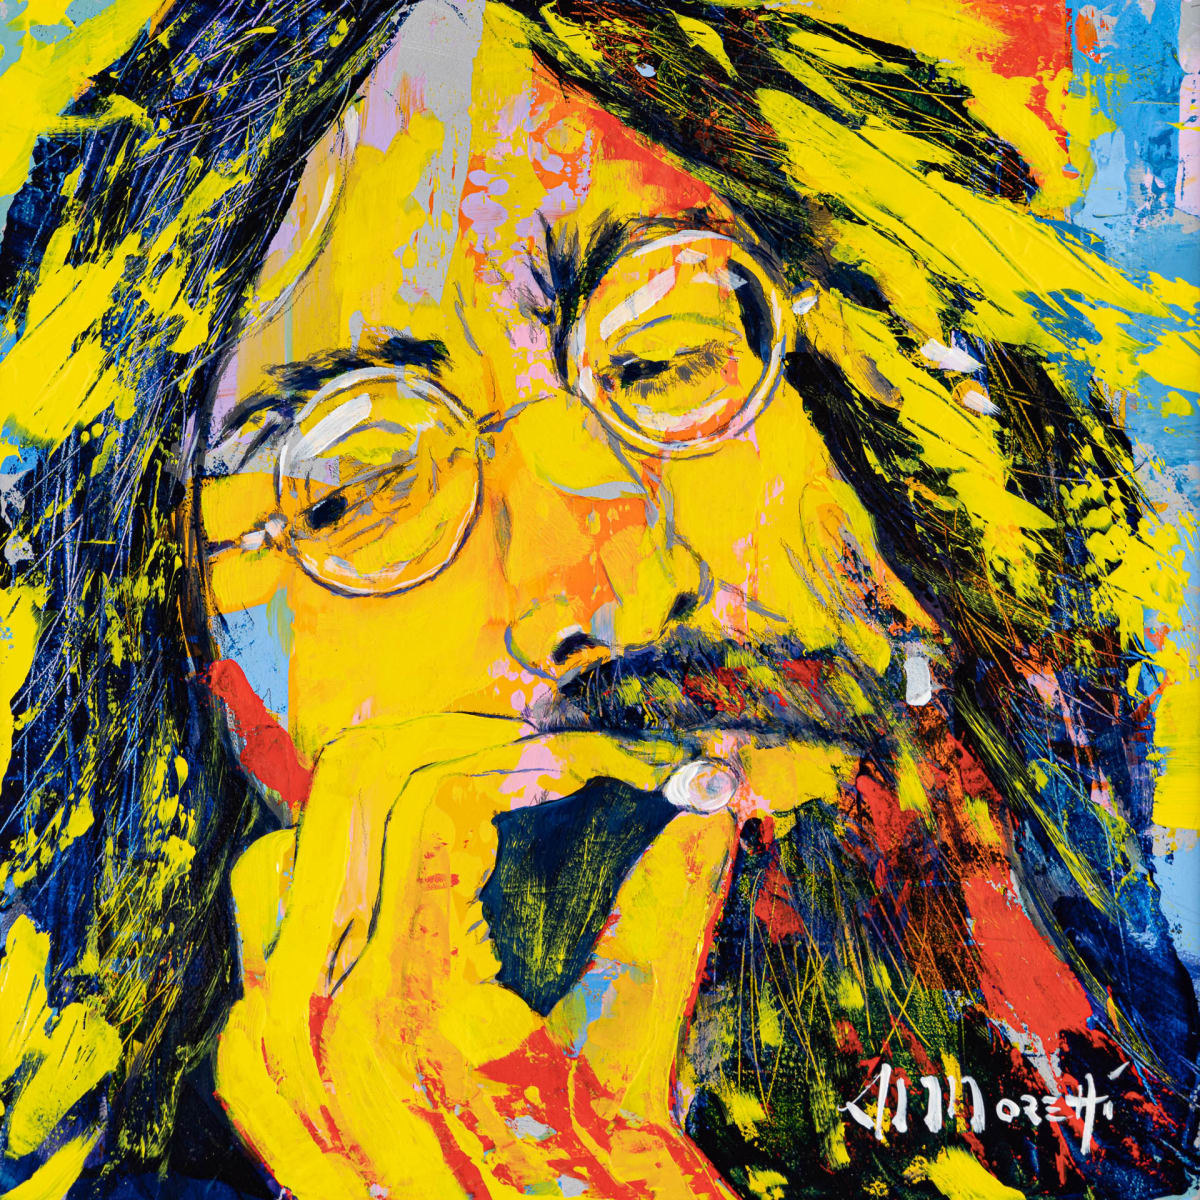 John Lennon, "Smokin' John" by Al Moretti 